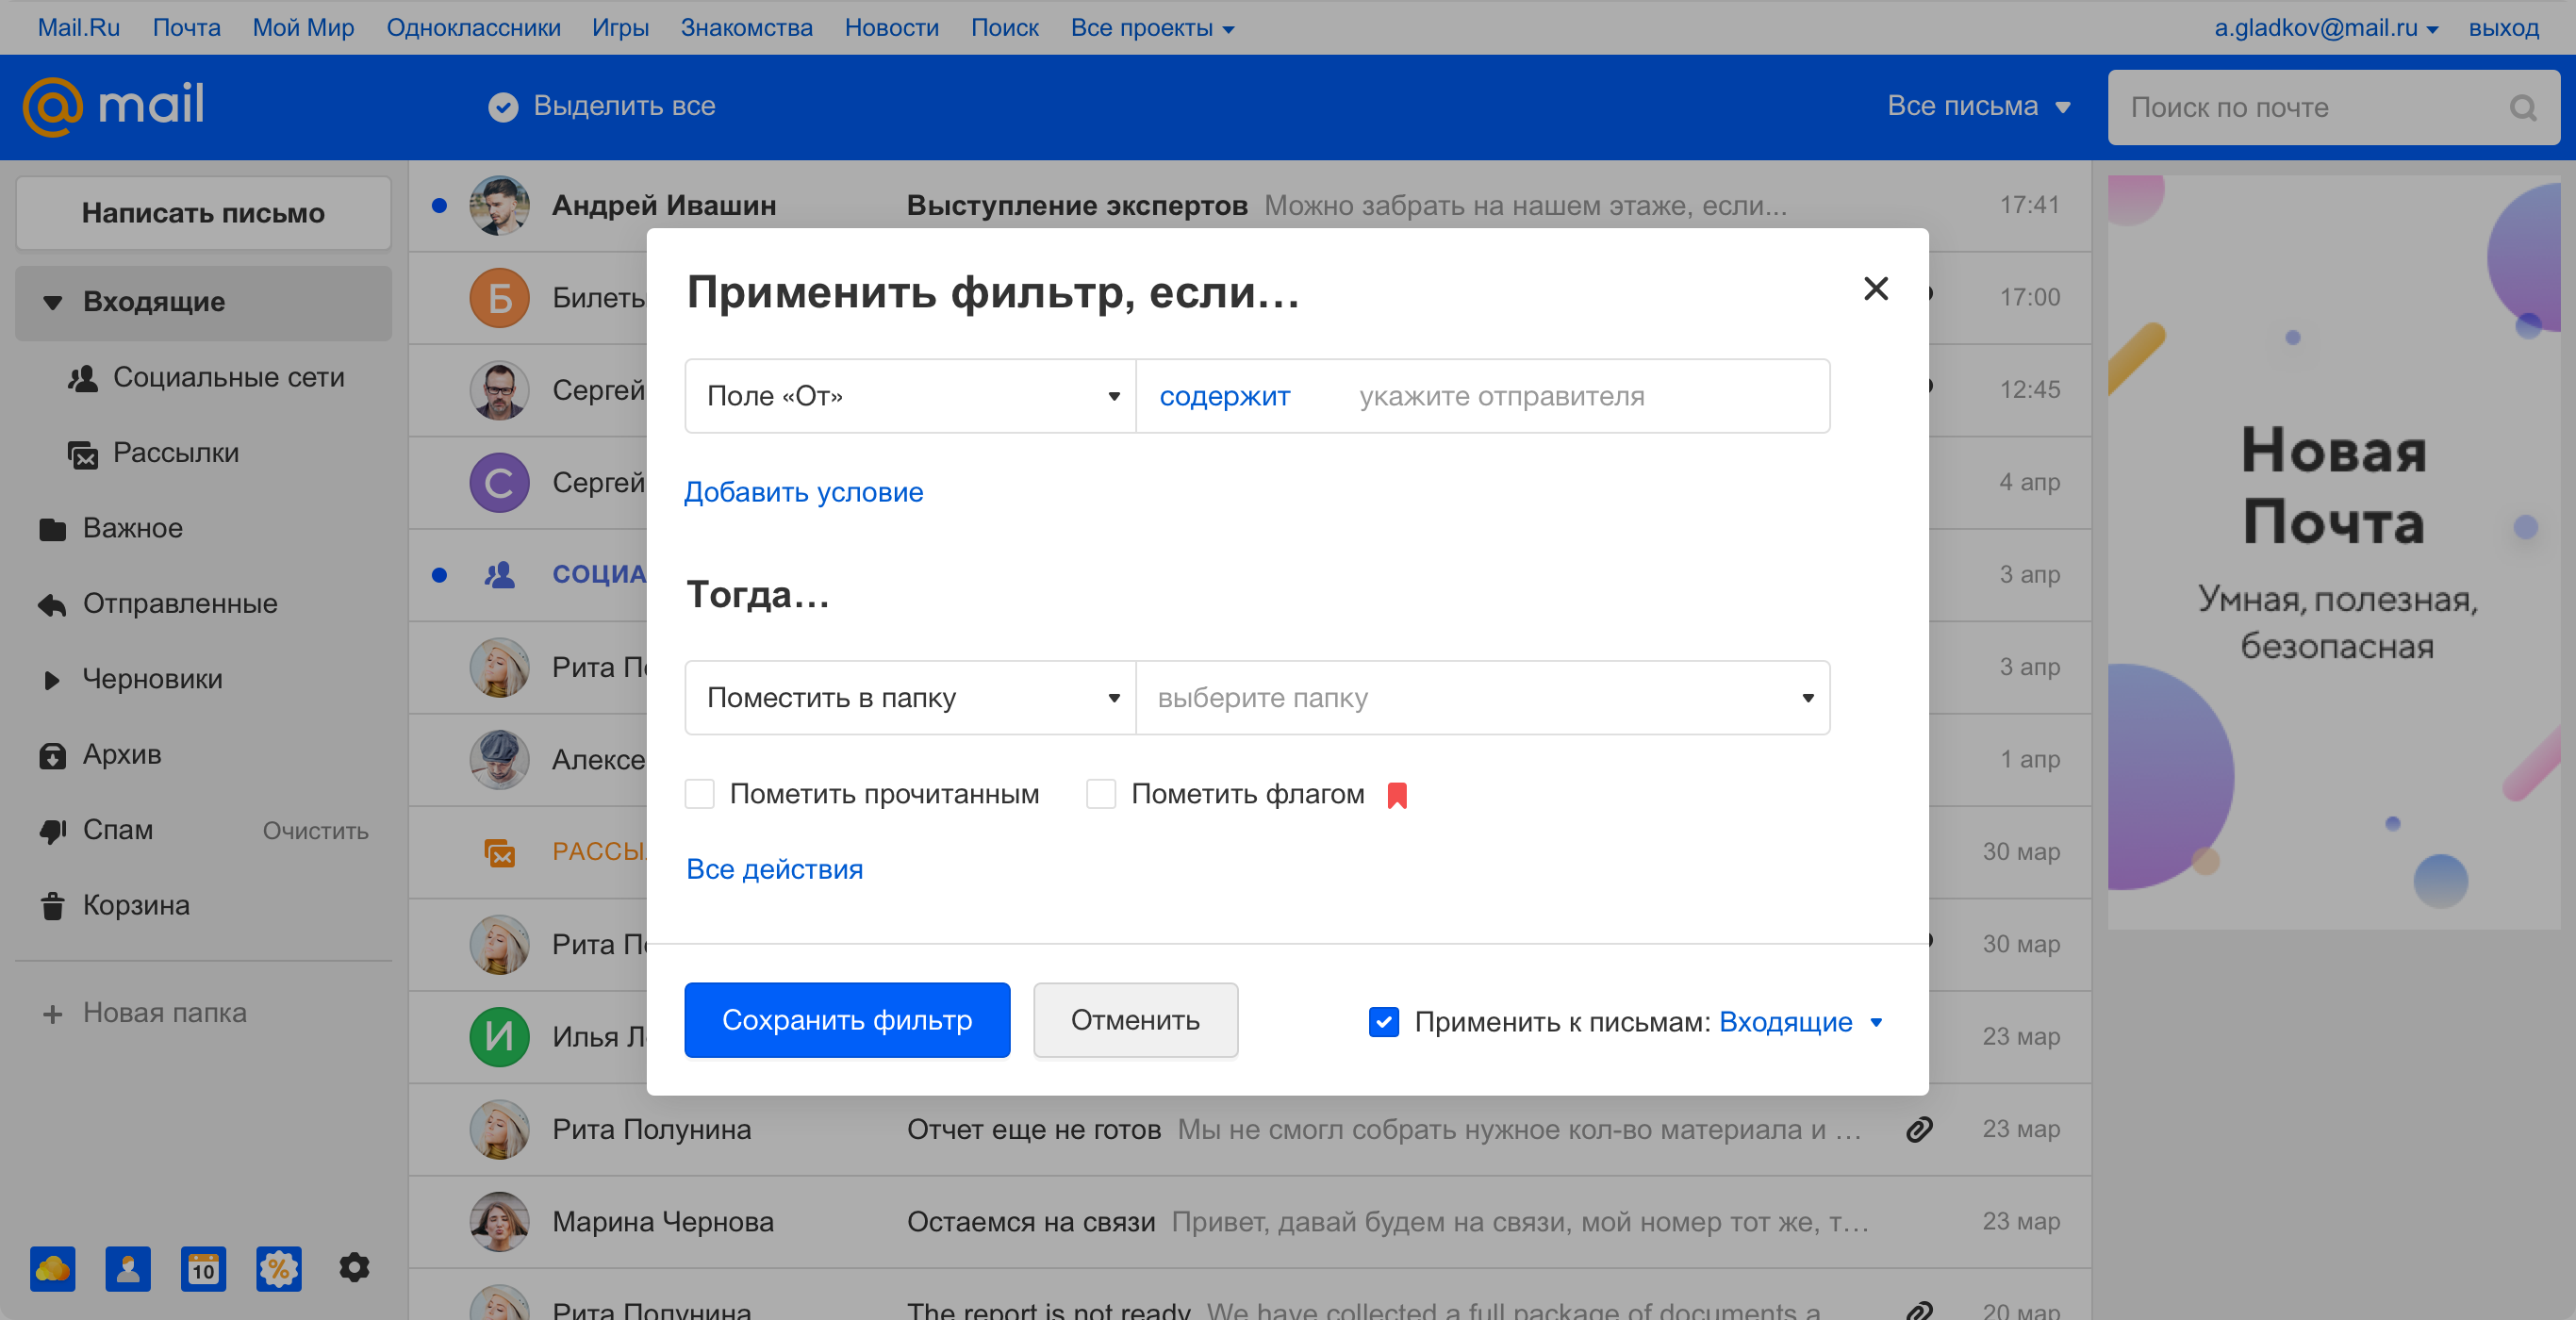 Новая Почта Mail.ru и при чем тут осьминог - 24